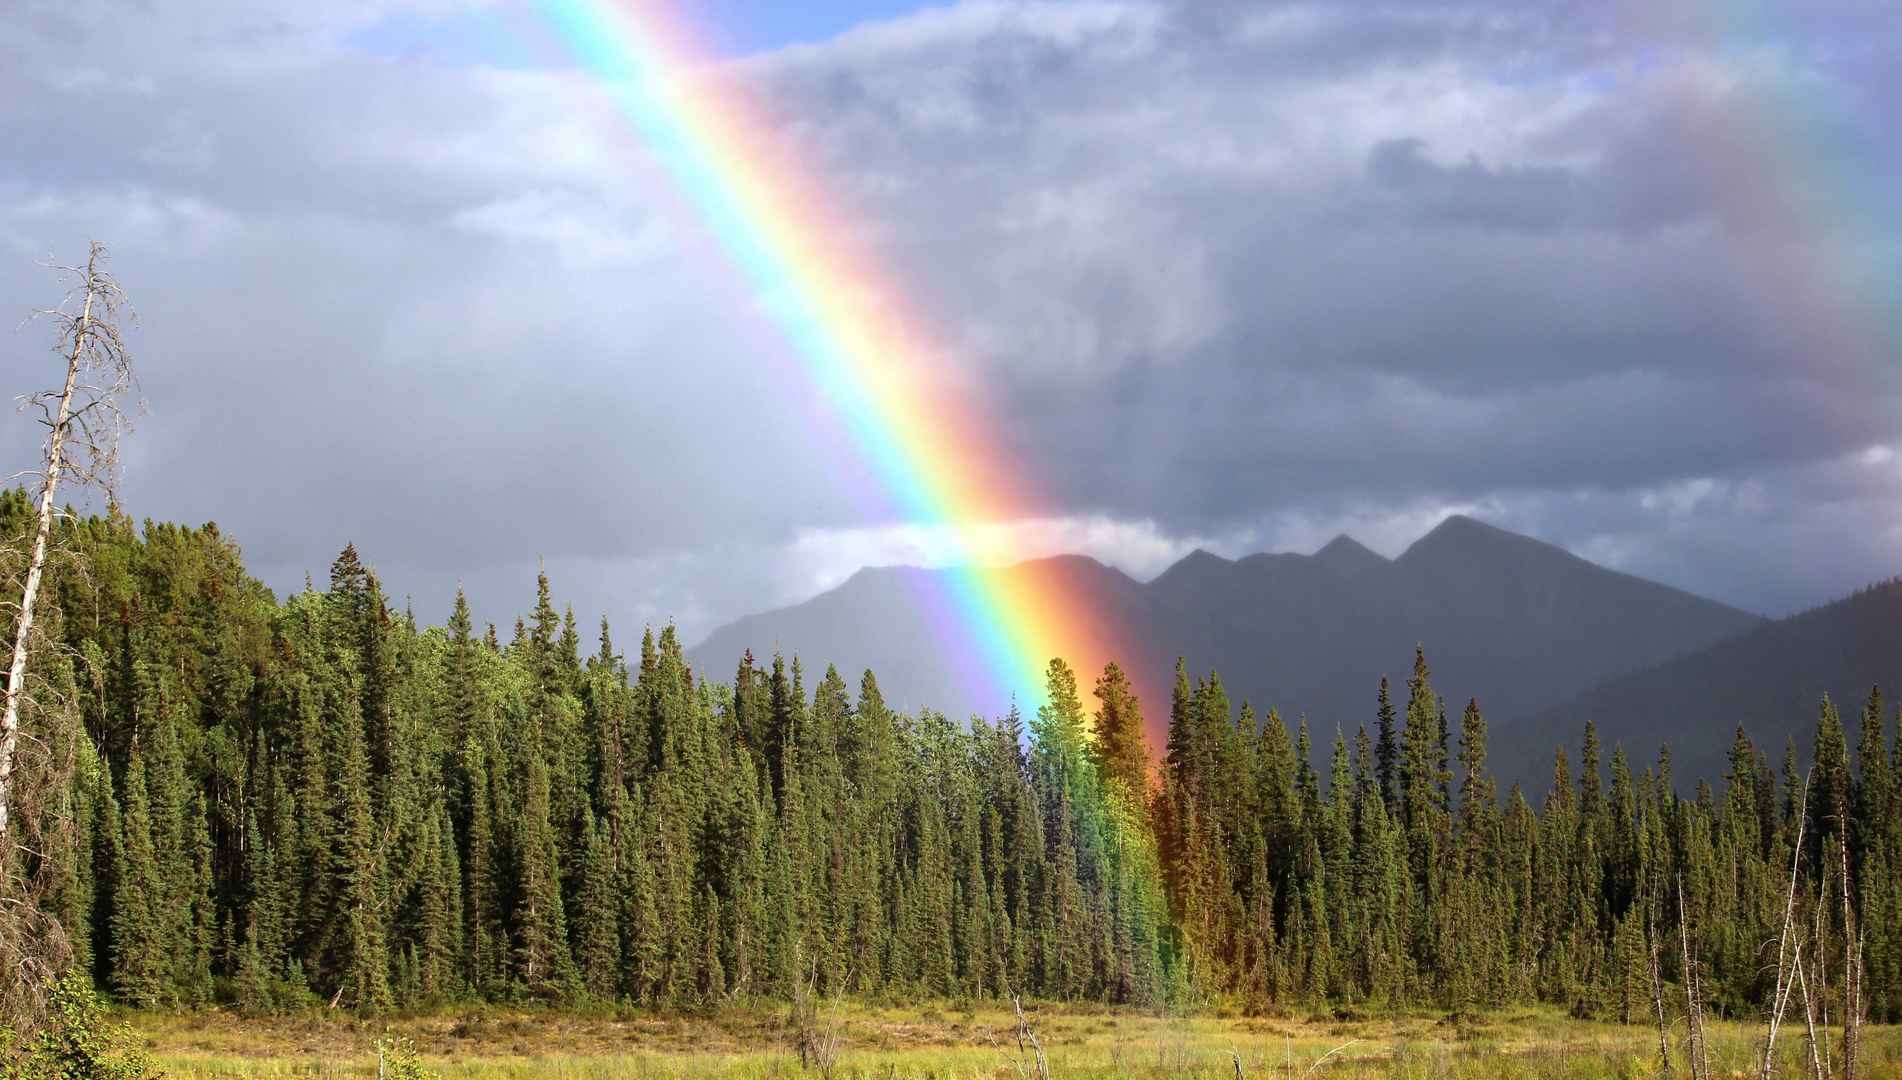 唯美的大自然现象“彩虹”高清壁纸图片套图1